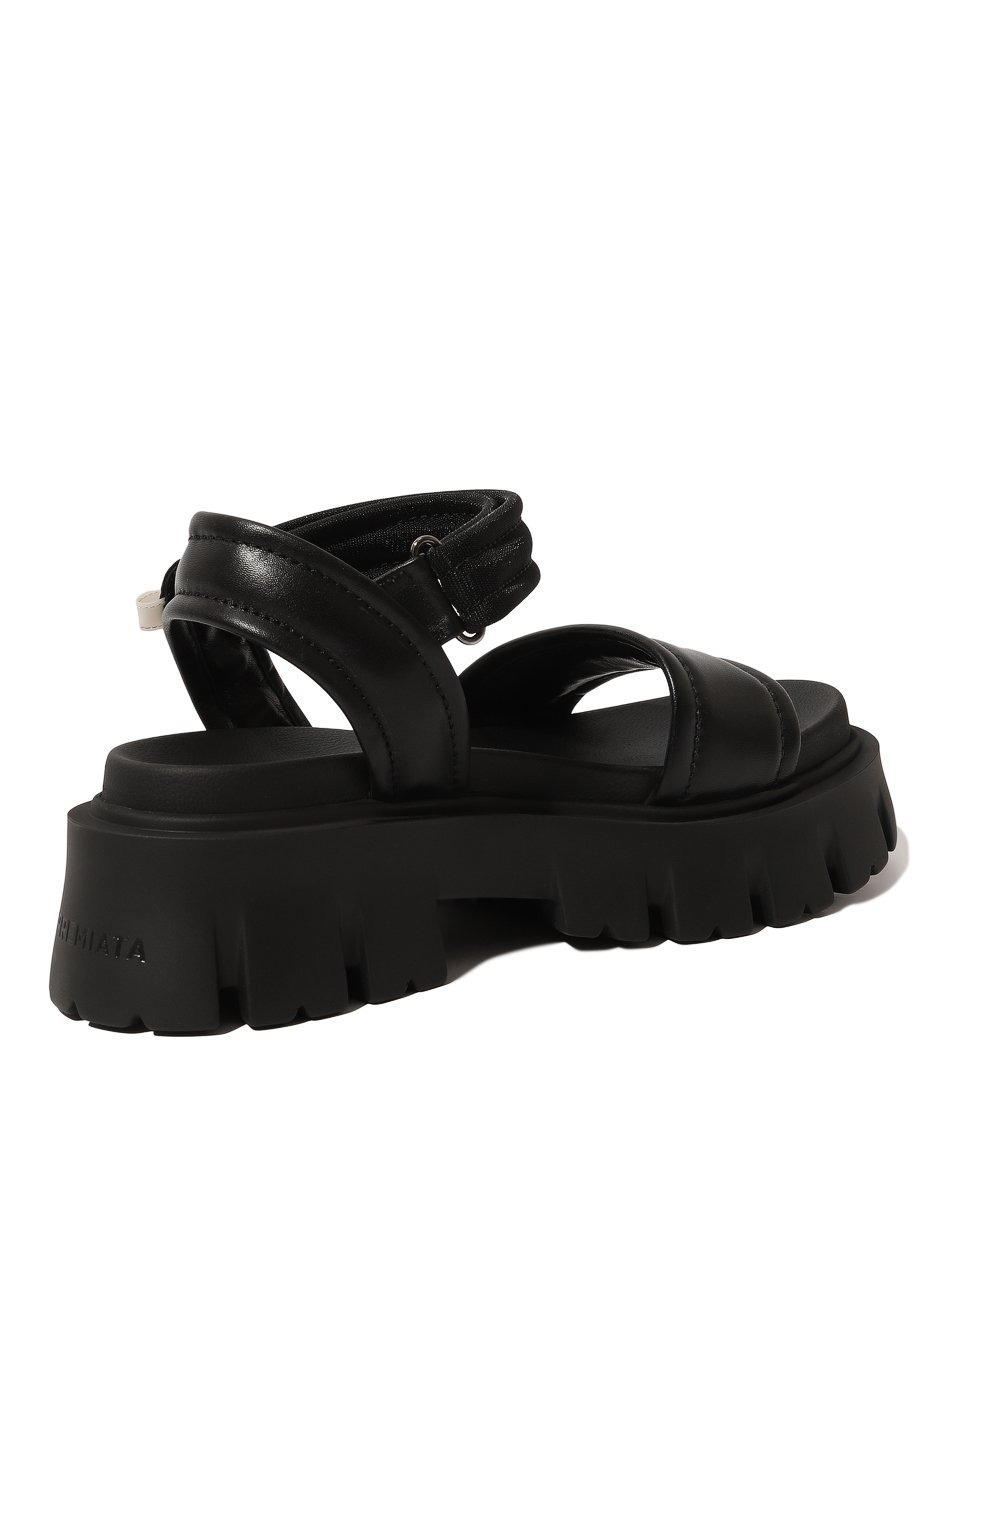 Комбинированные сандалии Premiata M6286/NAPPA EGITT0, цвет чёрный, размер 41 M6286/NAPPA EGITT0 - фото 5